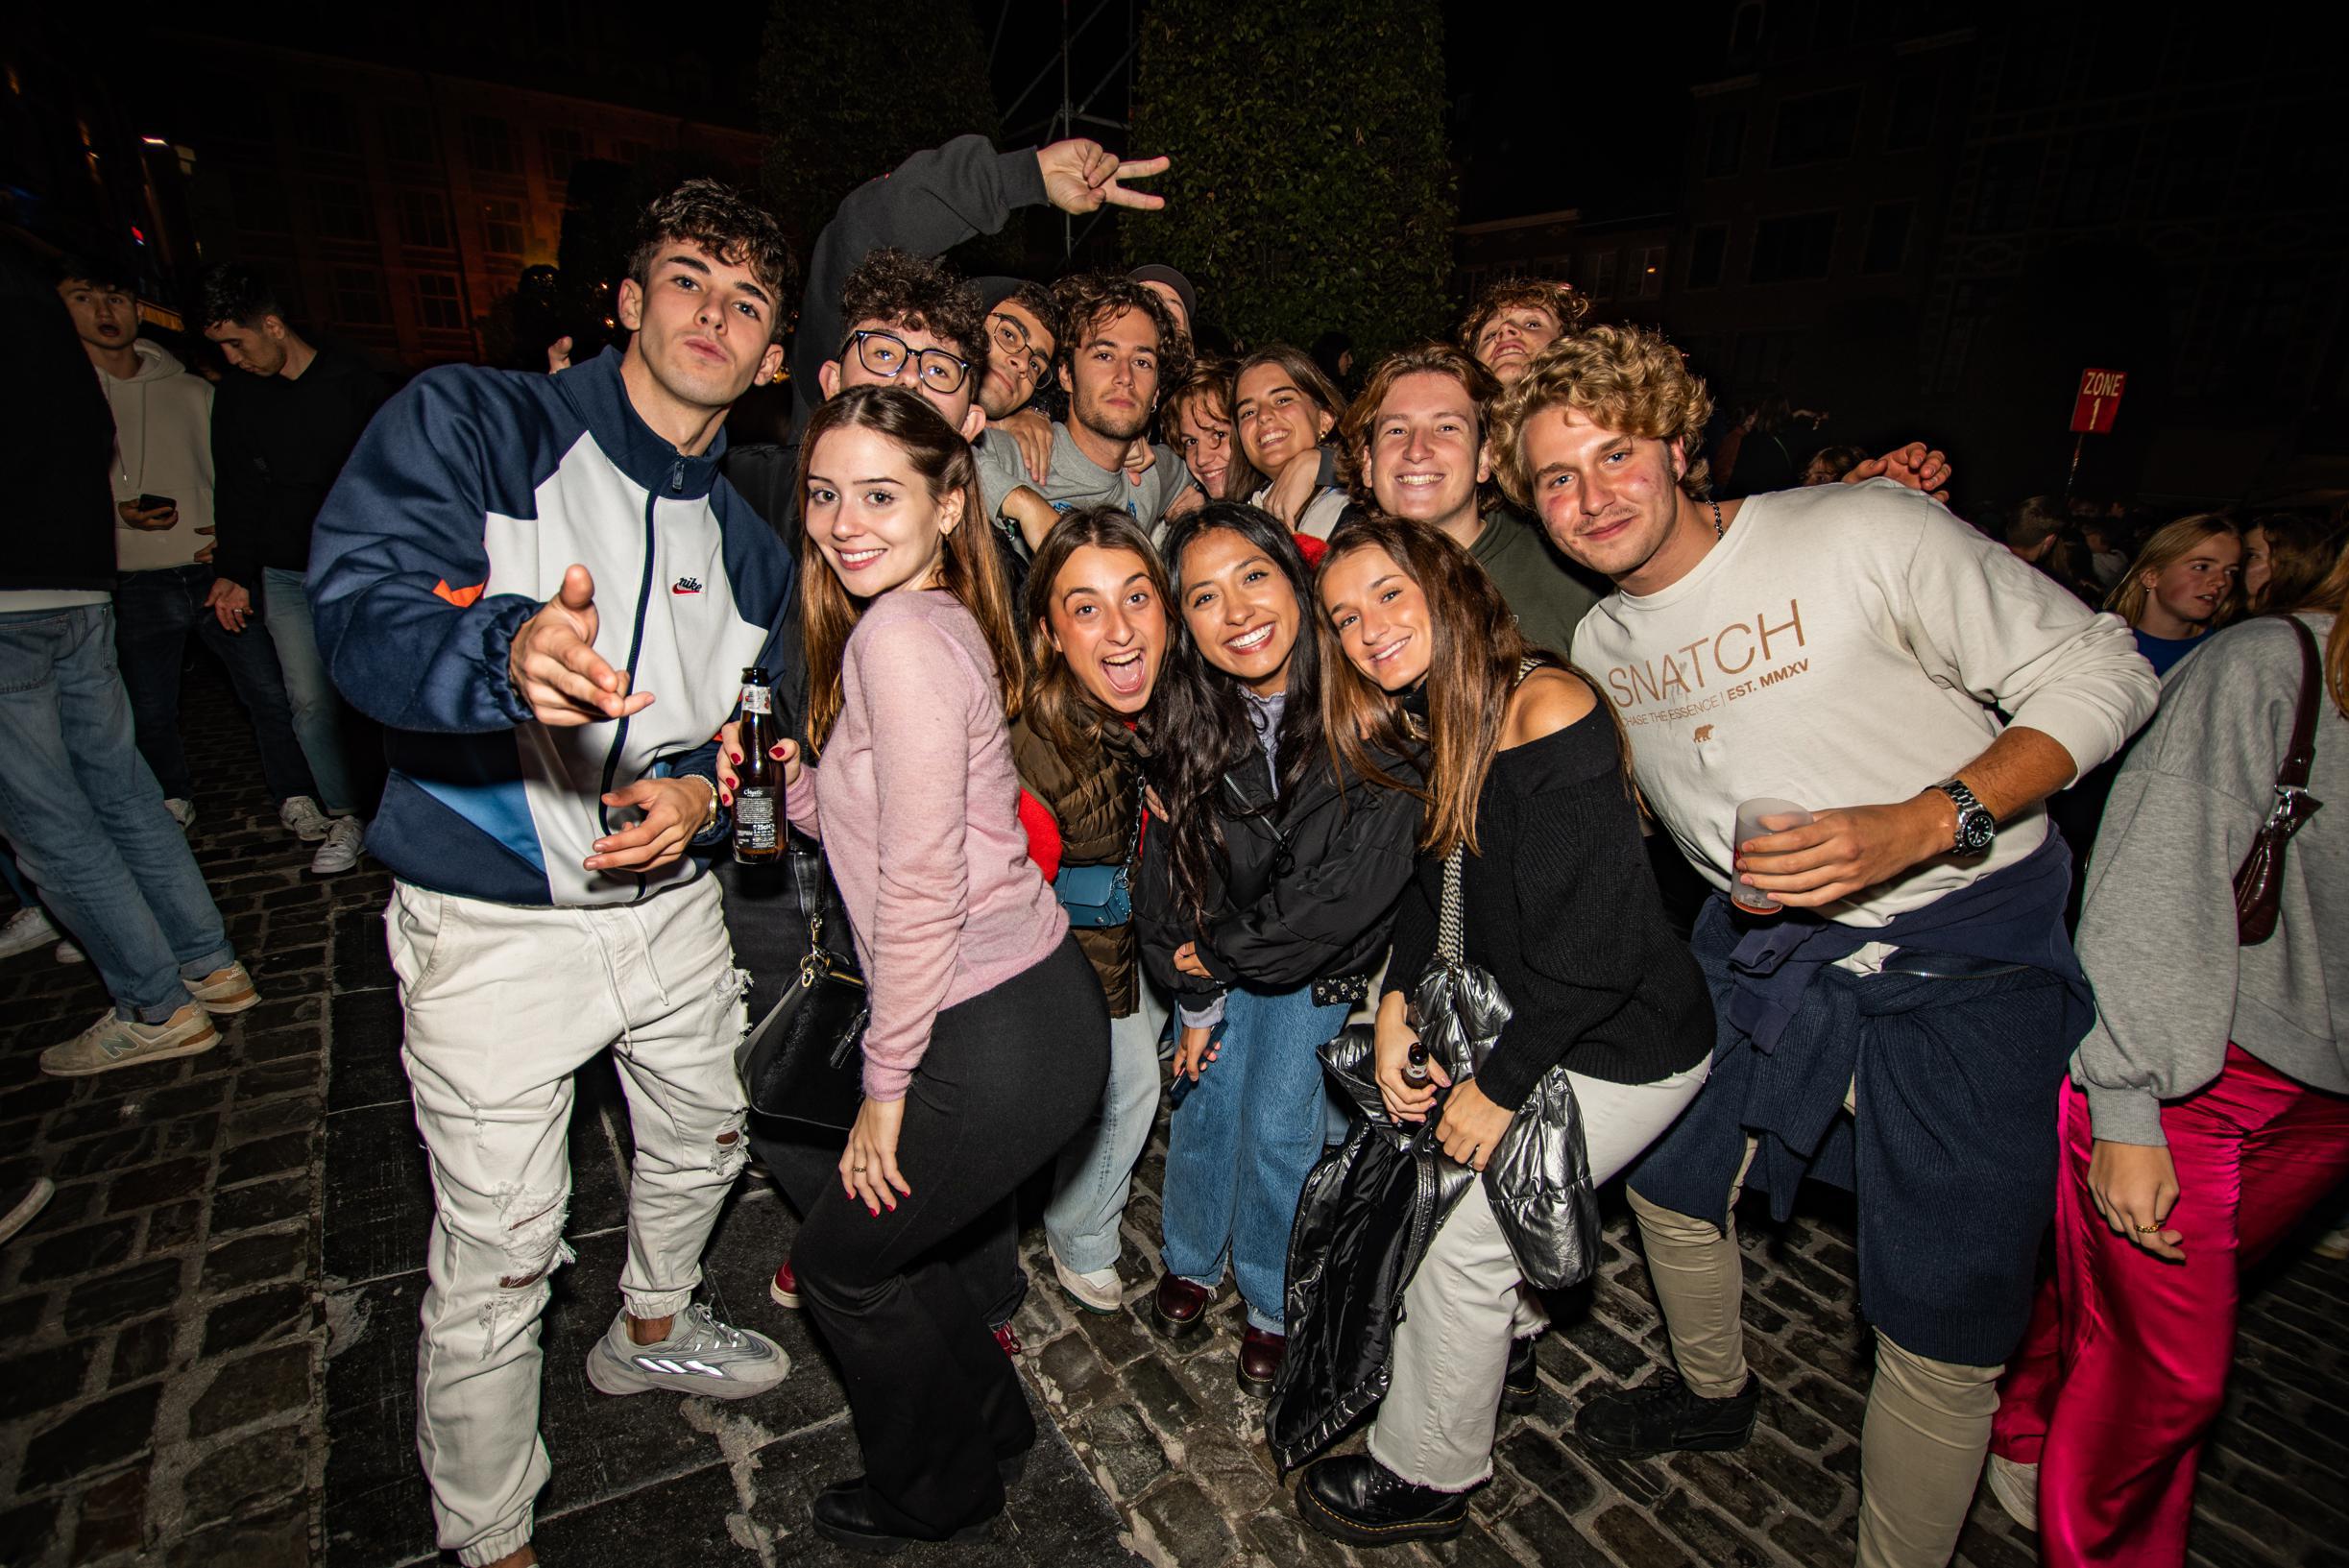 De studenten zijn terug in Leuven: zo verliep de eerste feestnacht op de Oude Markt